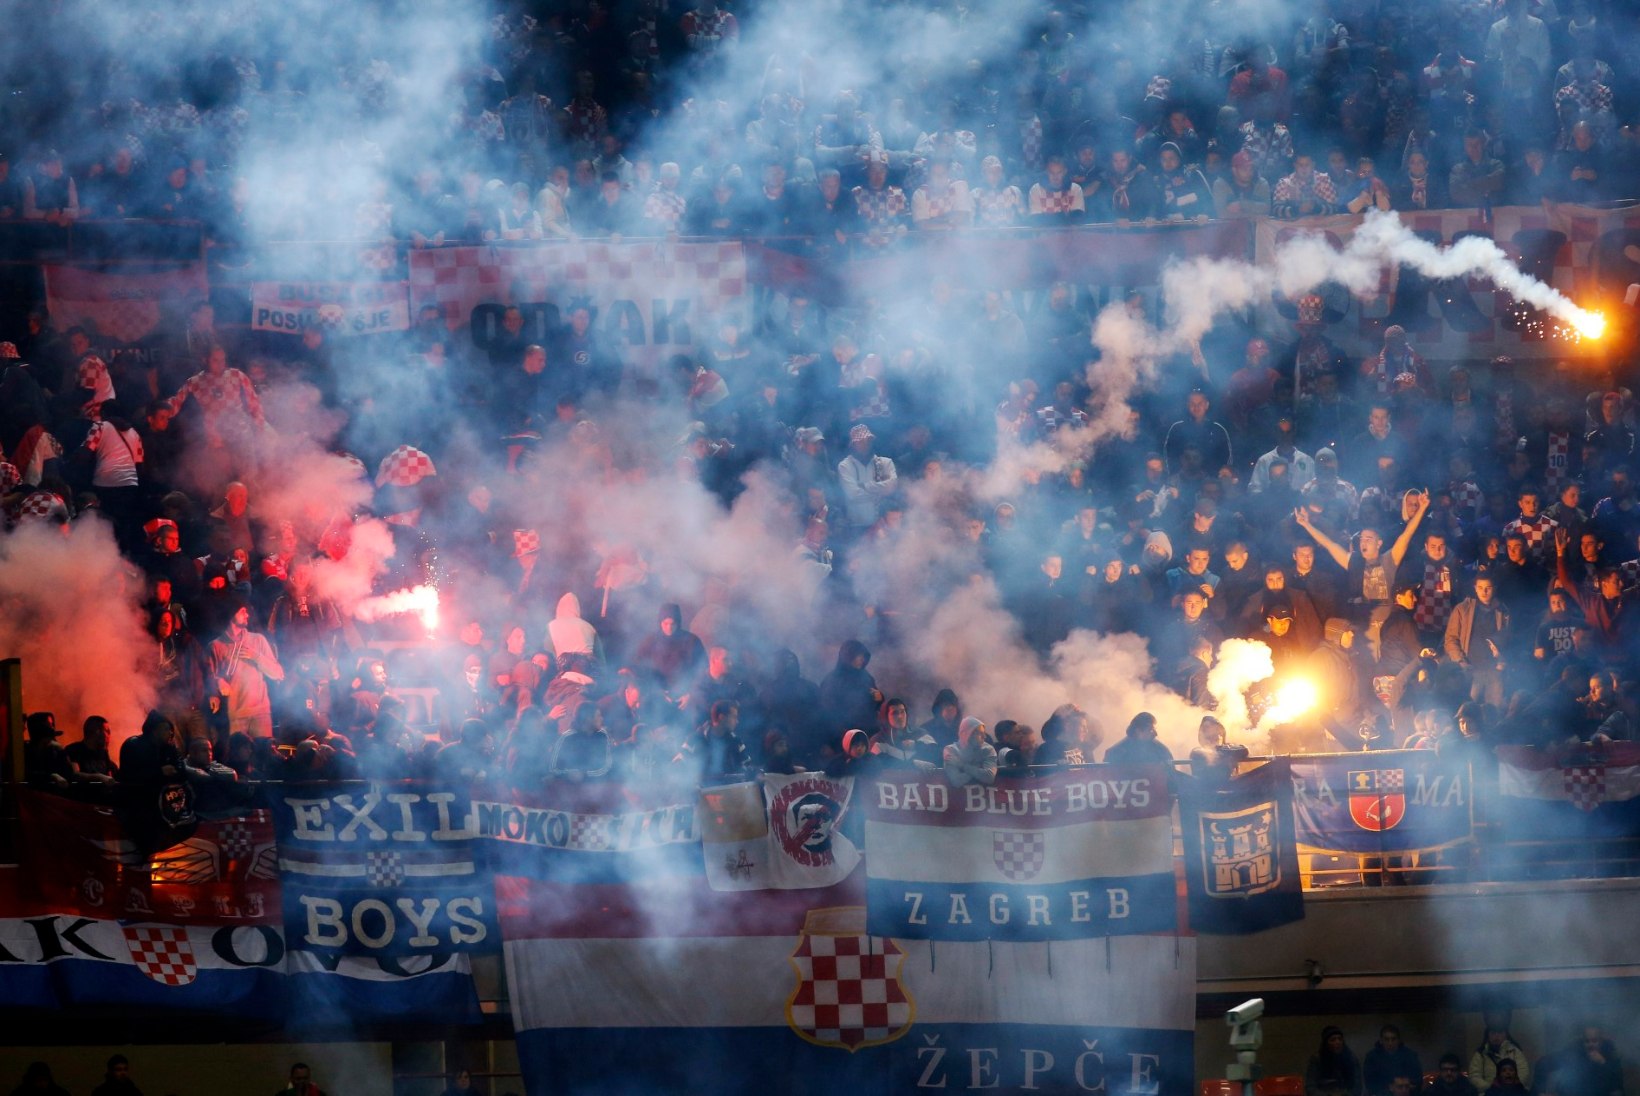 FOTOD JA VIDEOD: Horvaatia jalgpallifännid tahtsid San Siro staadioni põlema pista?!